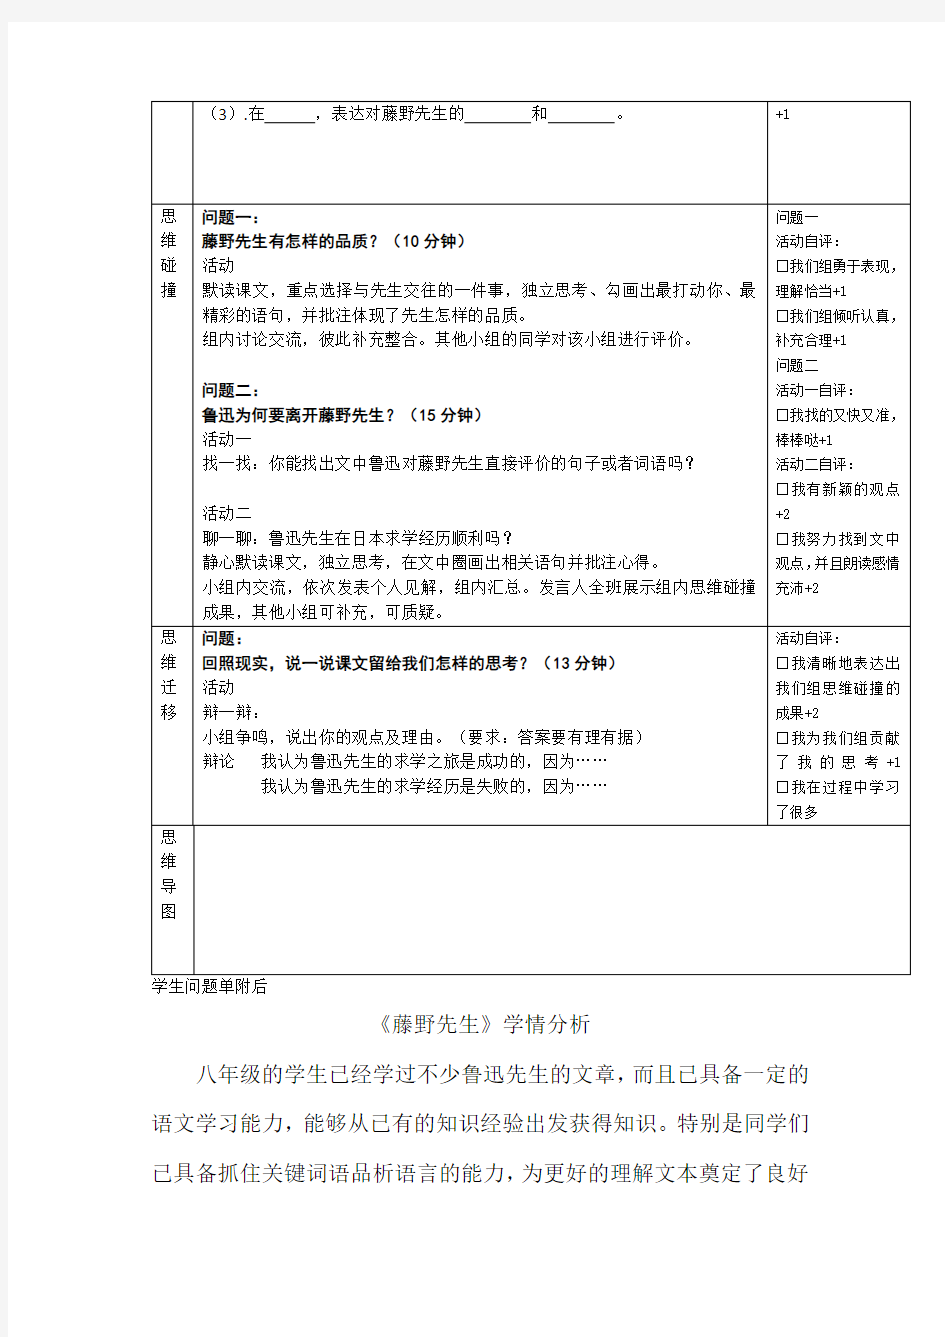 初中语文_藤野先生教学设计学情分析教材分析课后反思